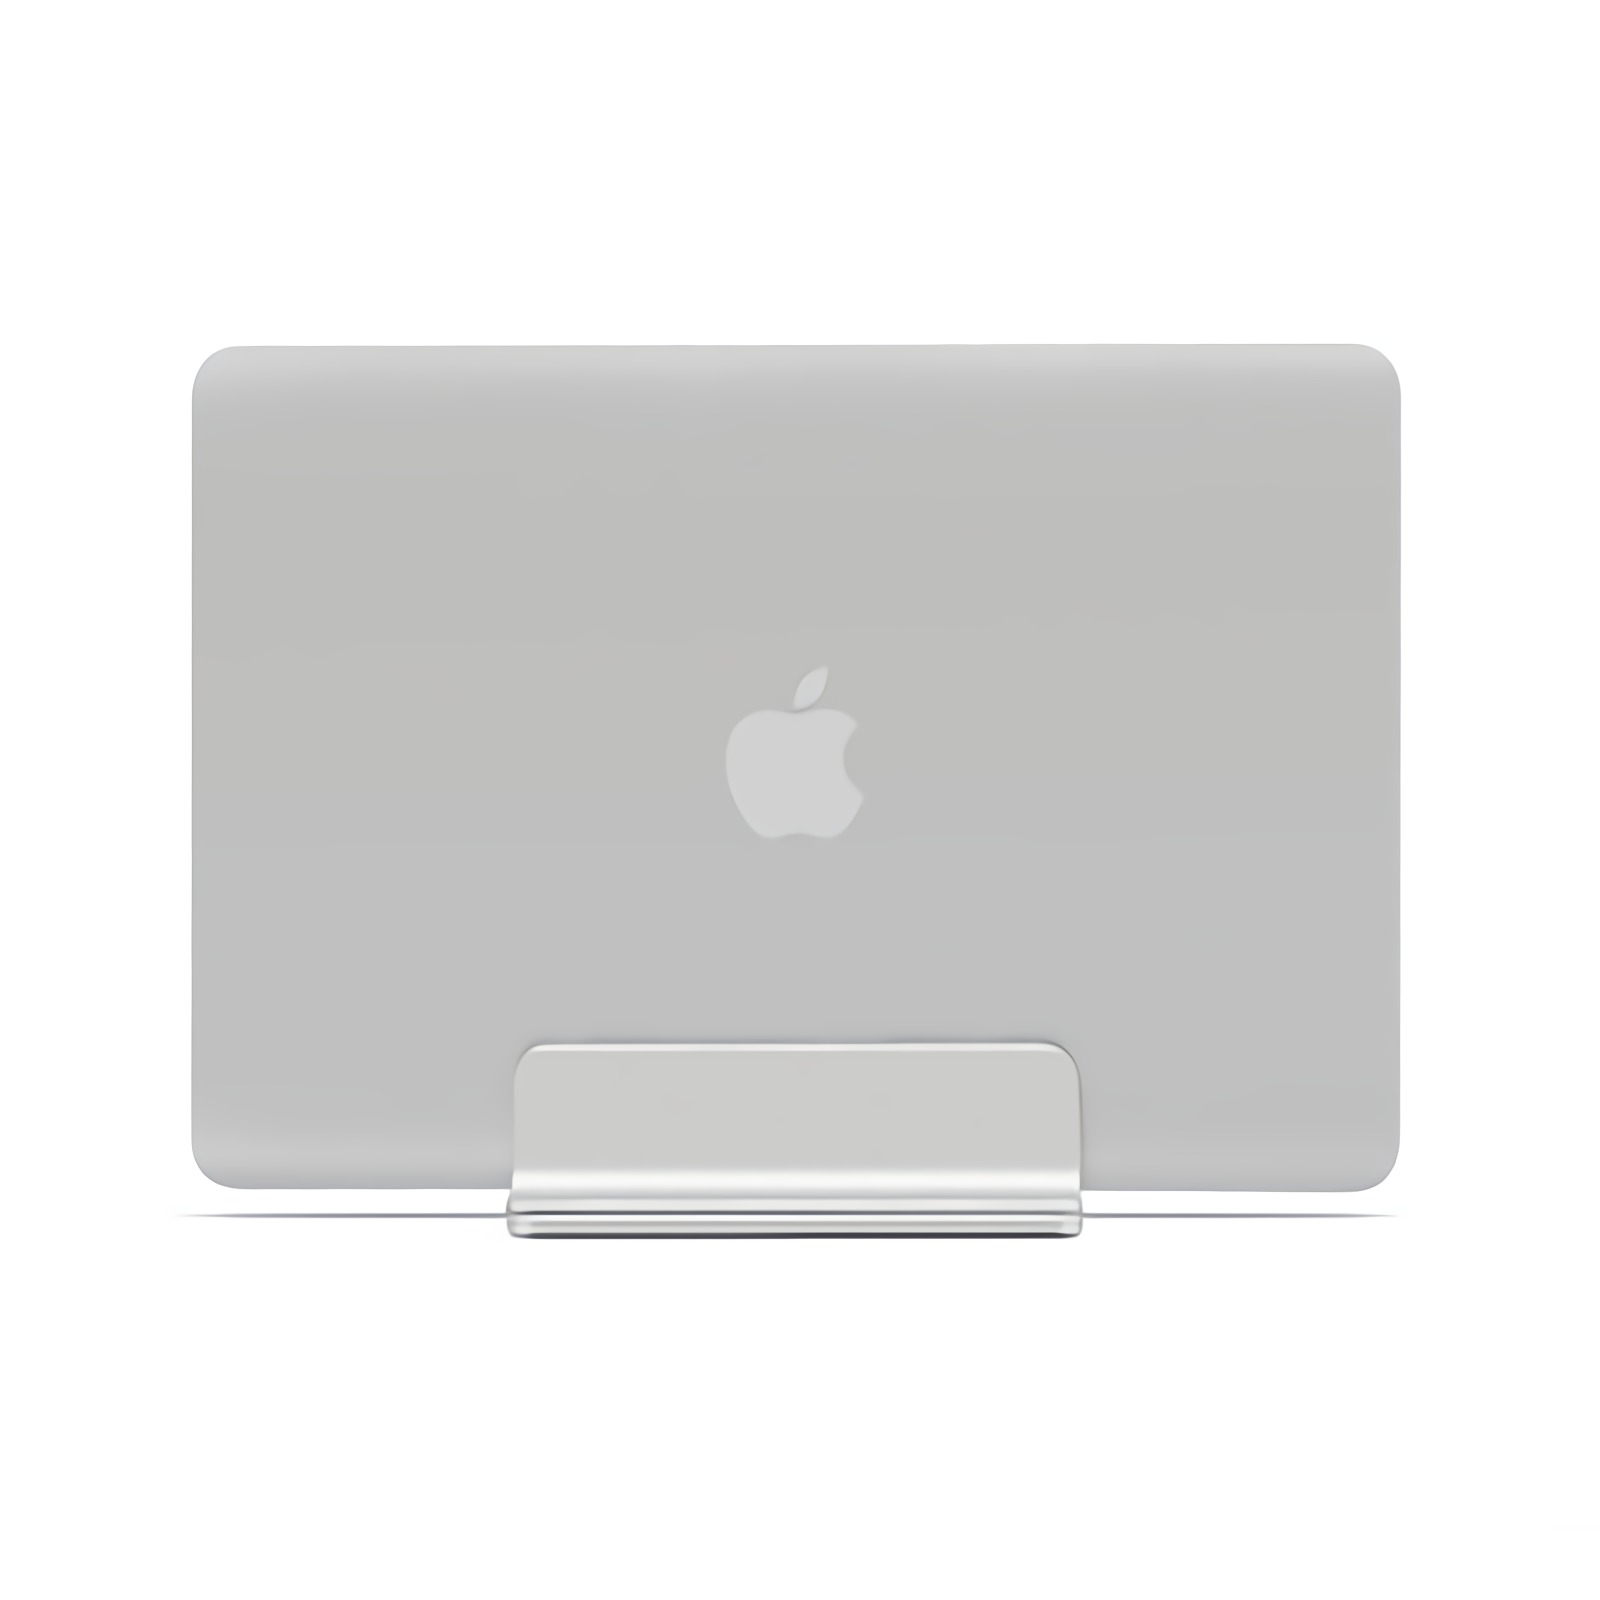 Adjustable-Vertical-Laptop-Stand-Holder-Desktop-Aluminum-MacBook-Stand-with-Adjustable-Dock-Size-for-1818928-1